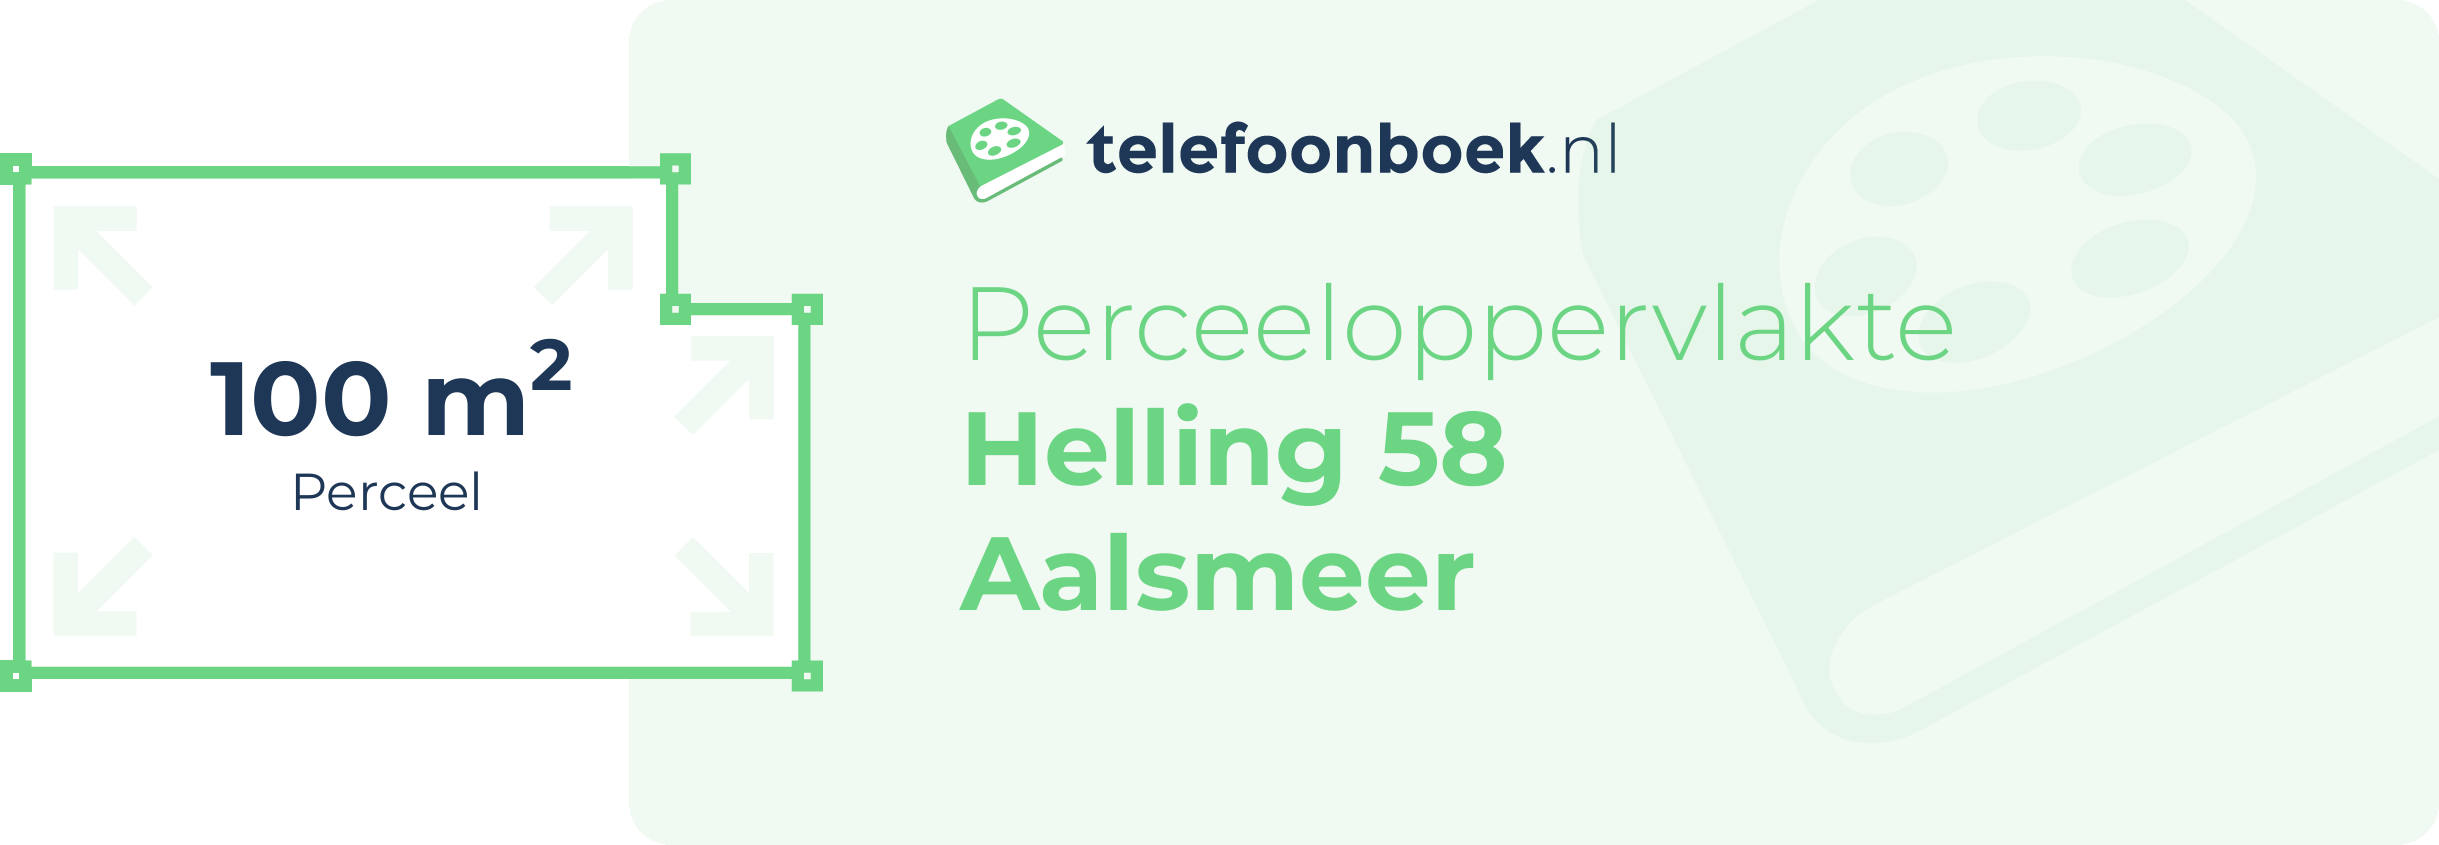 Perceeloppervlakte Helling 58 Aalsmeer